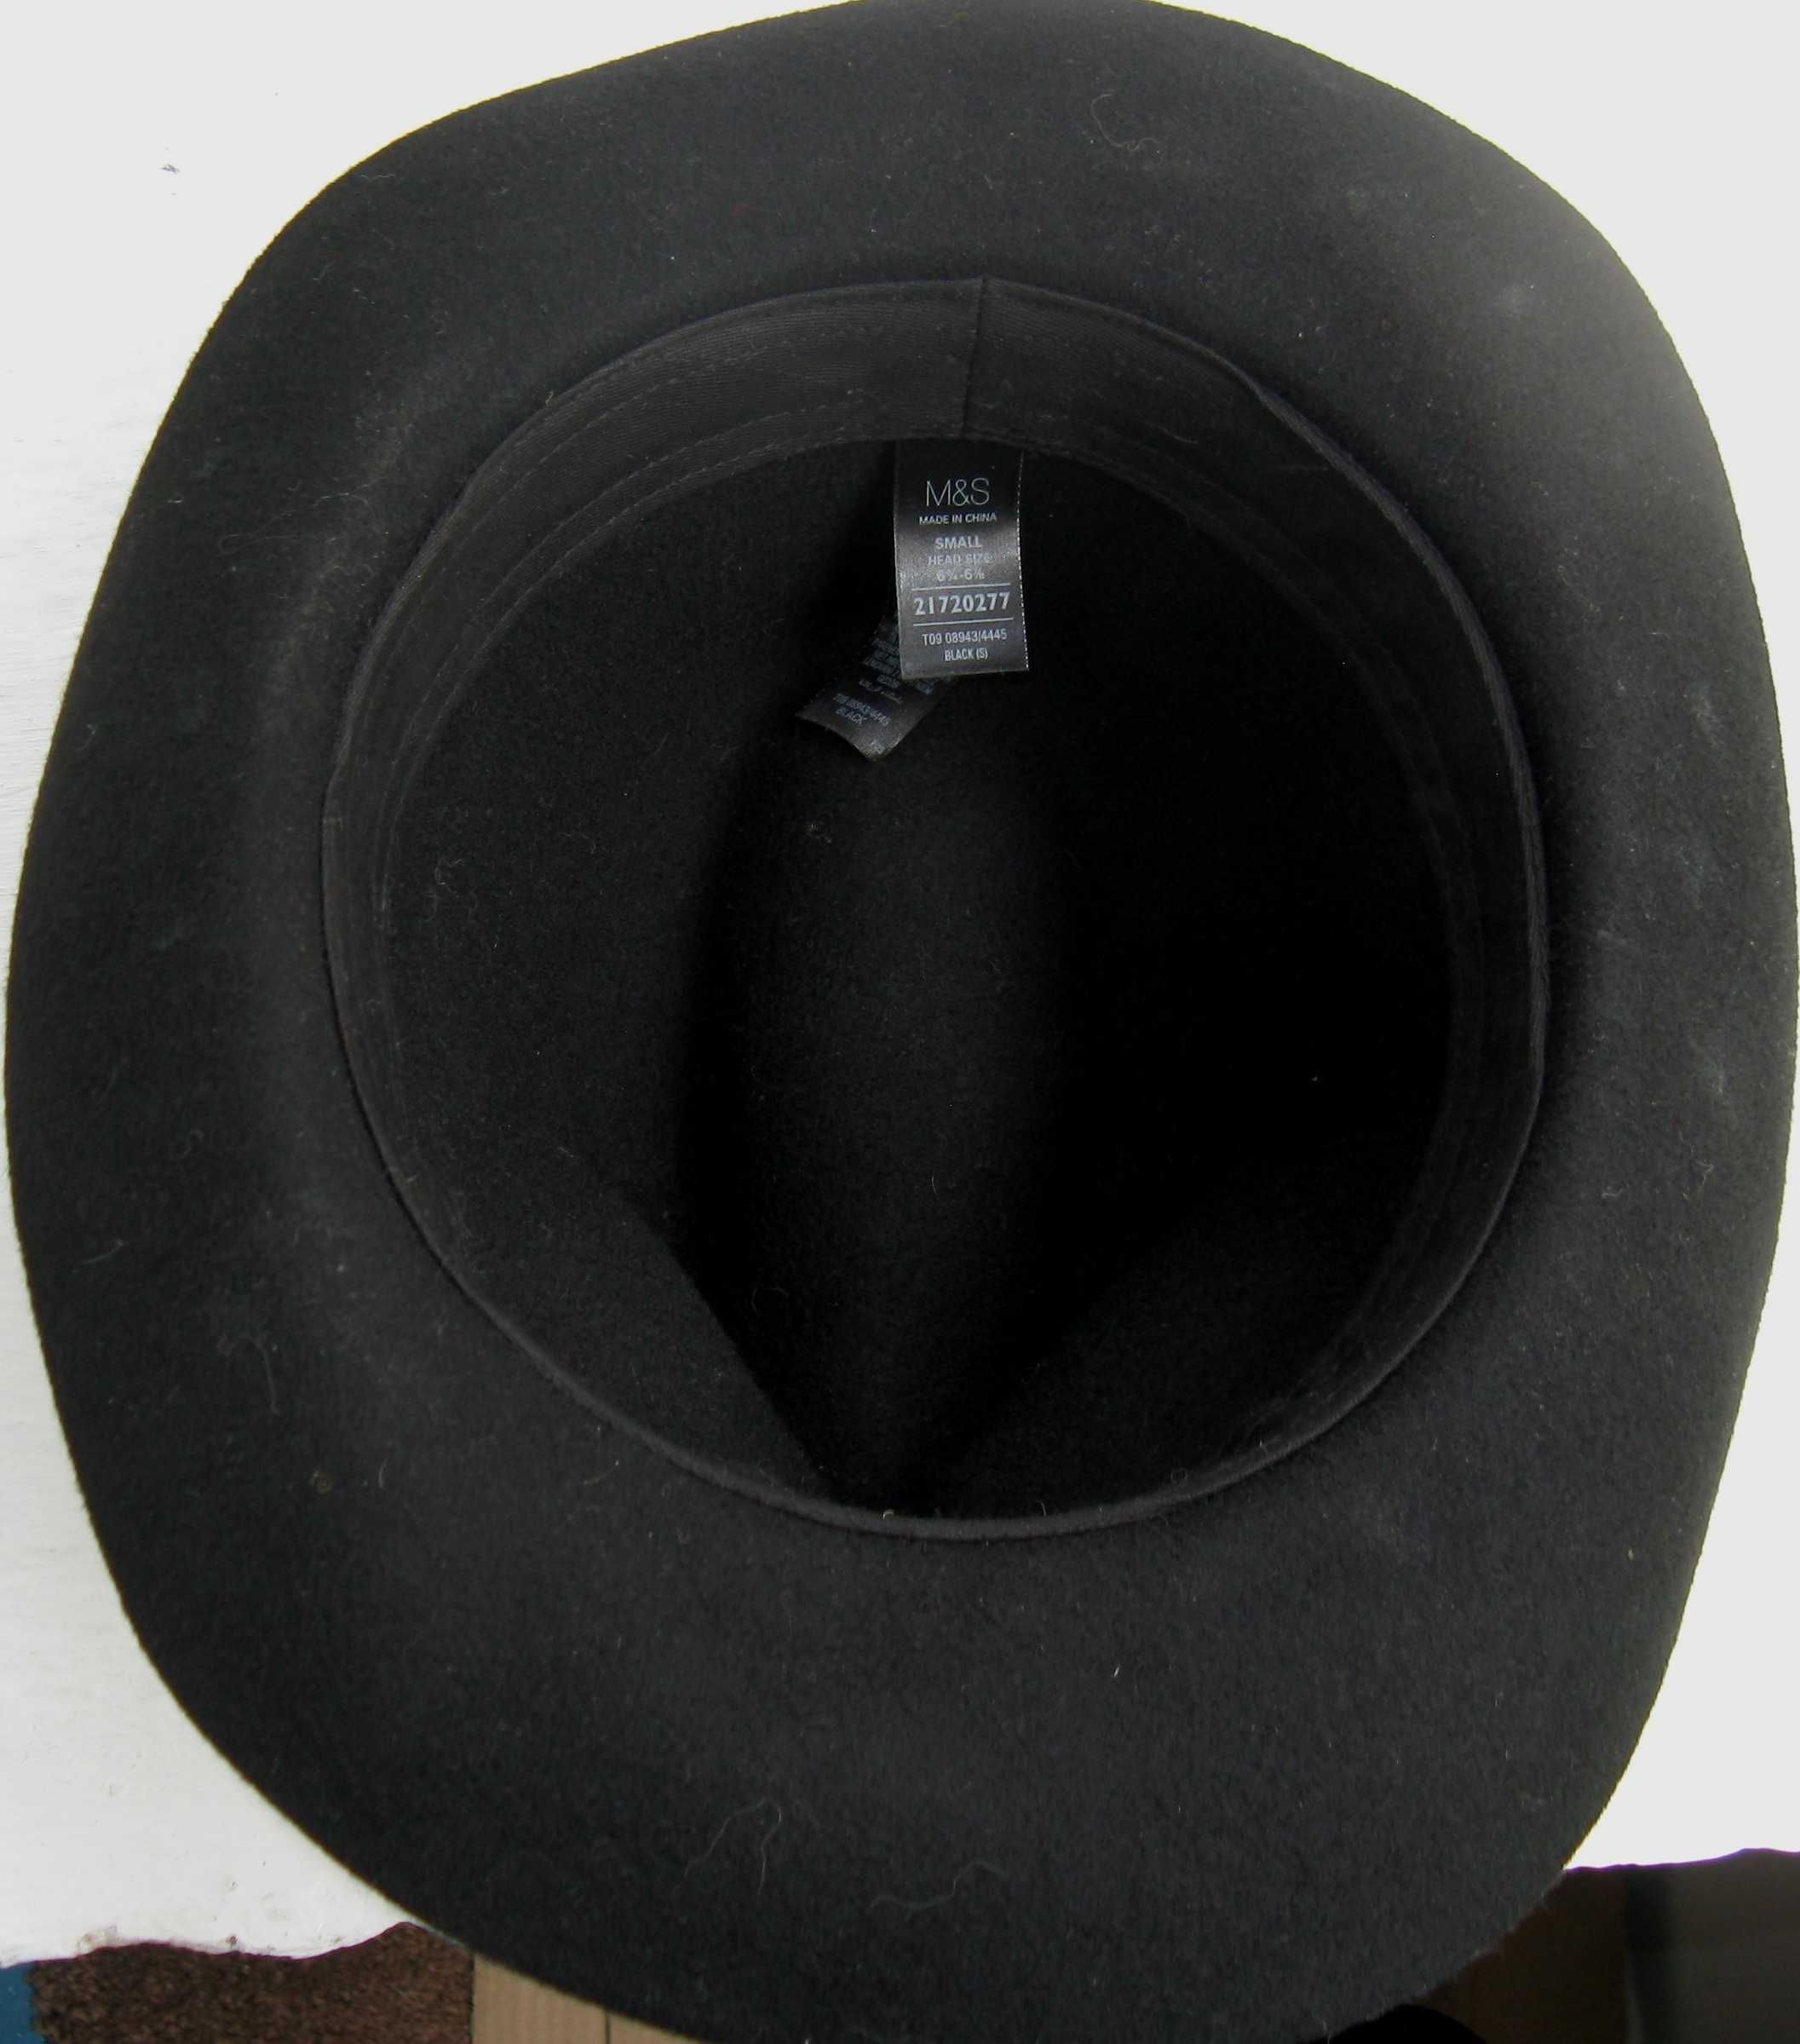 Шляпа мужская фетр федора M&S  размер 56/57